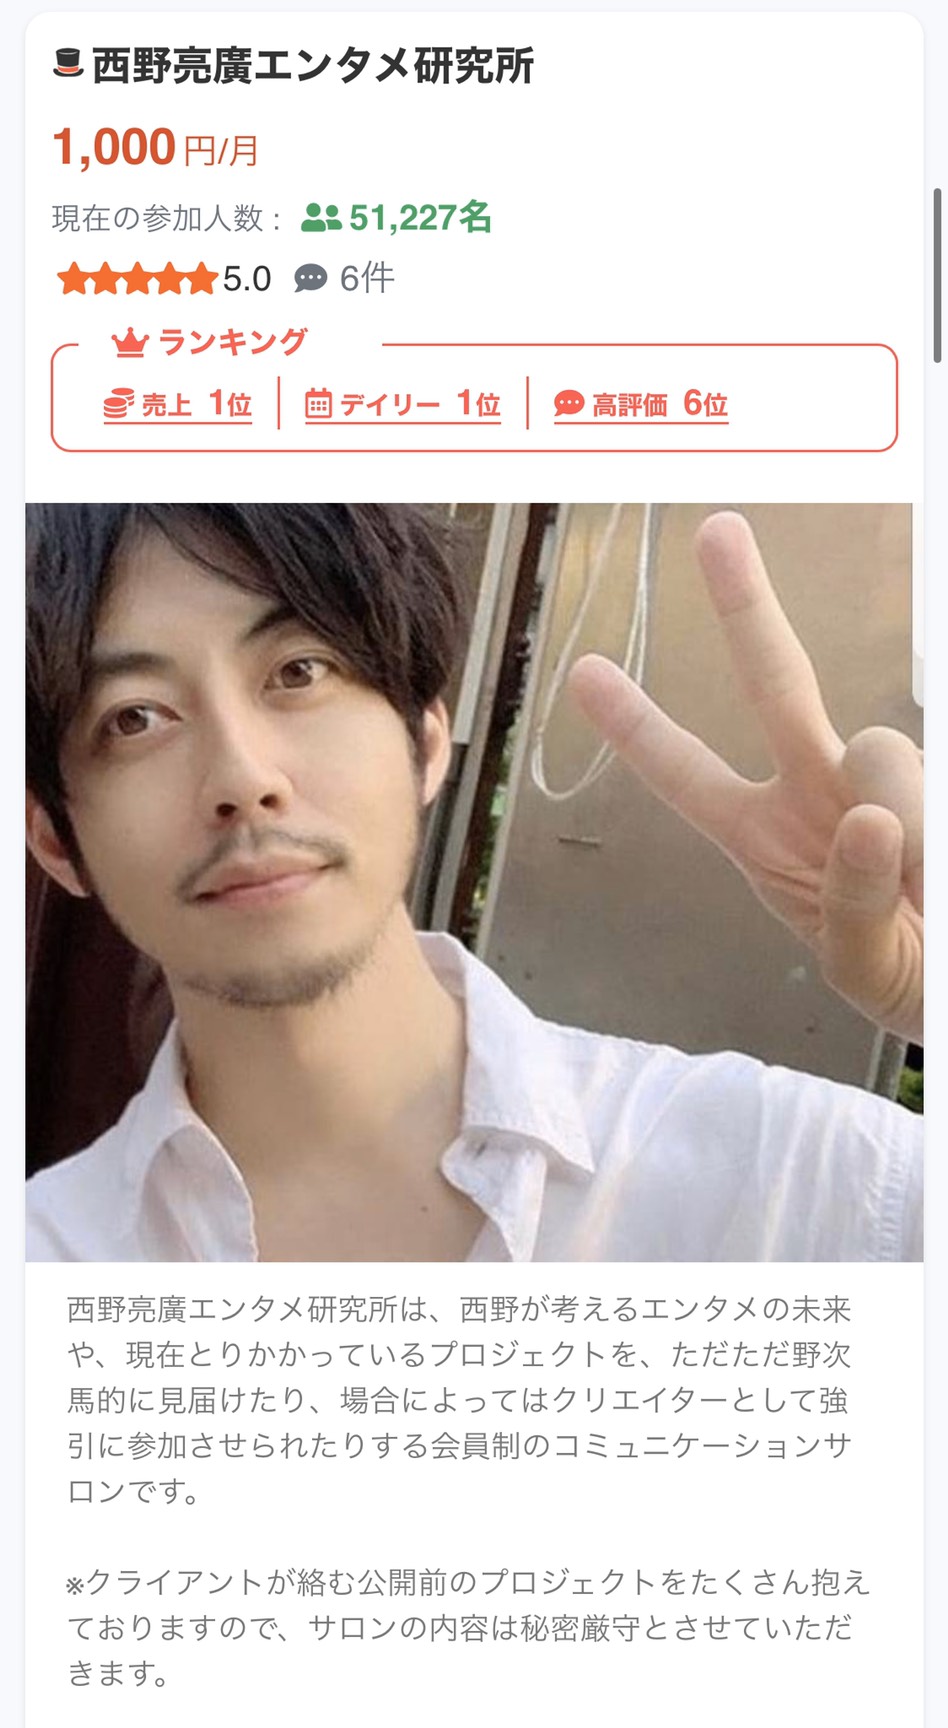 【みんなのオンラインサロン】日本最大級のオンラインサロン検索&口コミサイト